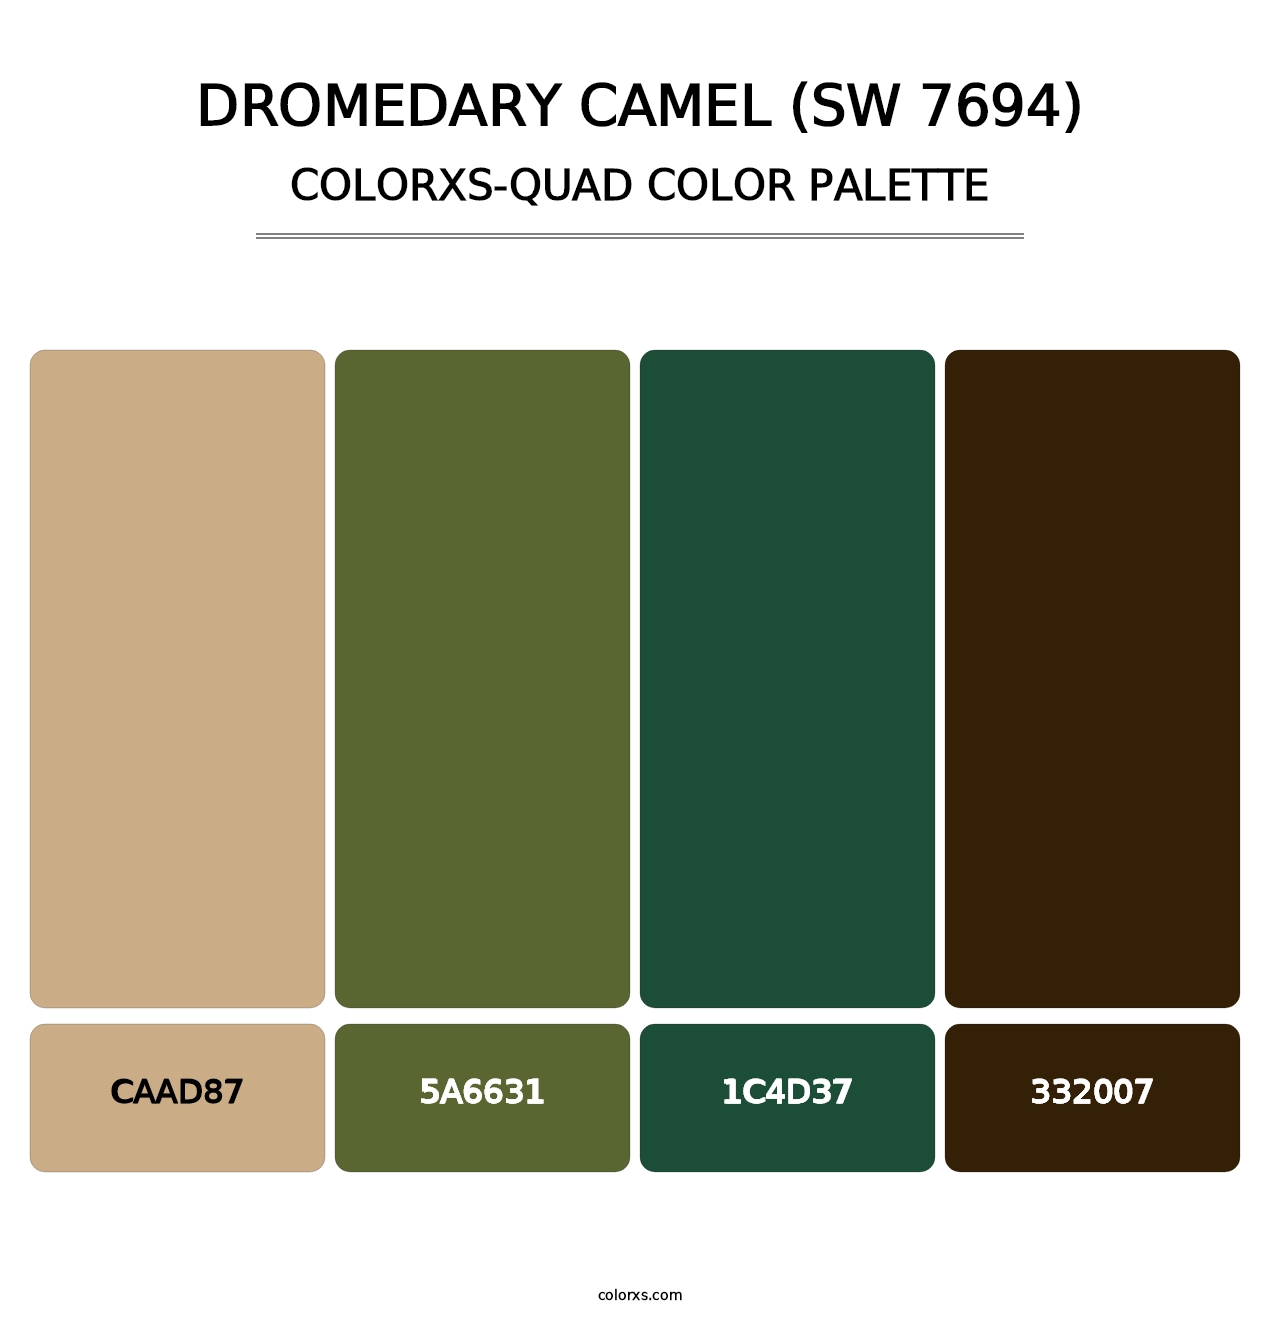 Dromedary Camel (SW 7694) - Colorxs Quad Palette